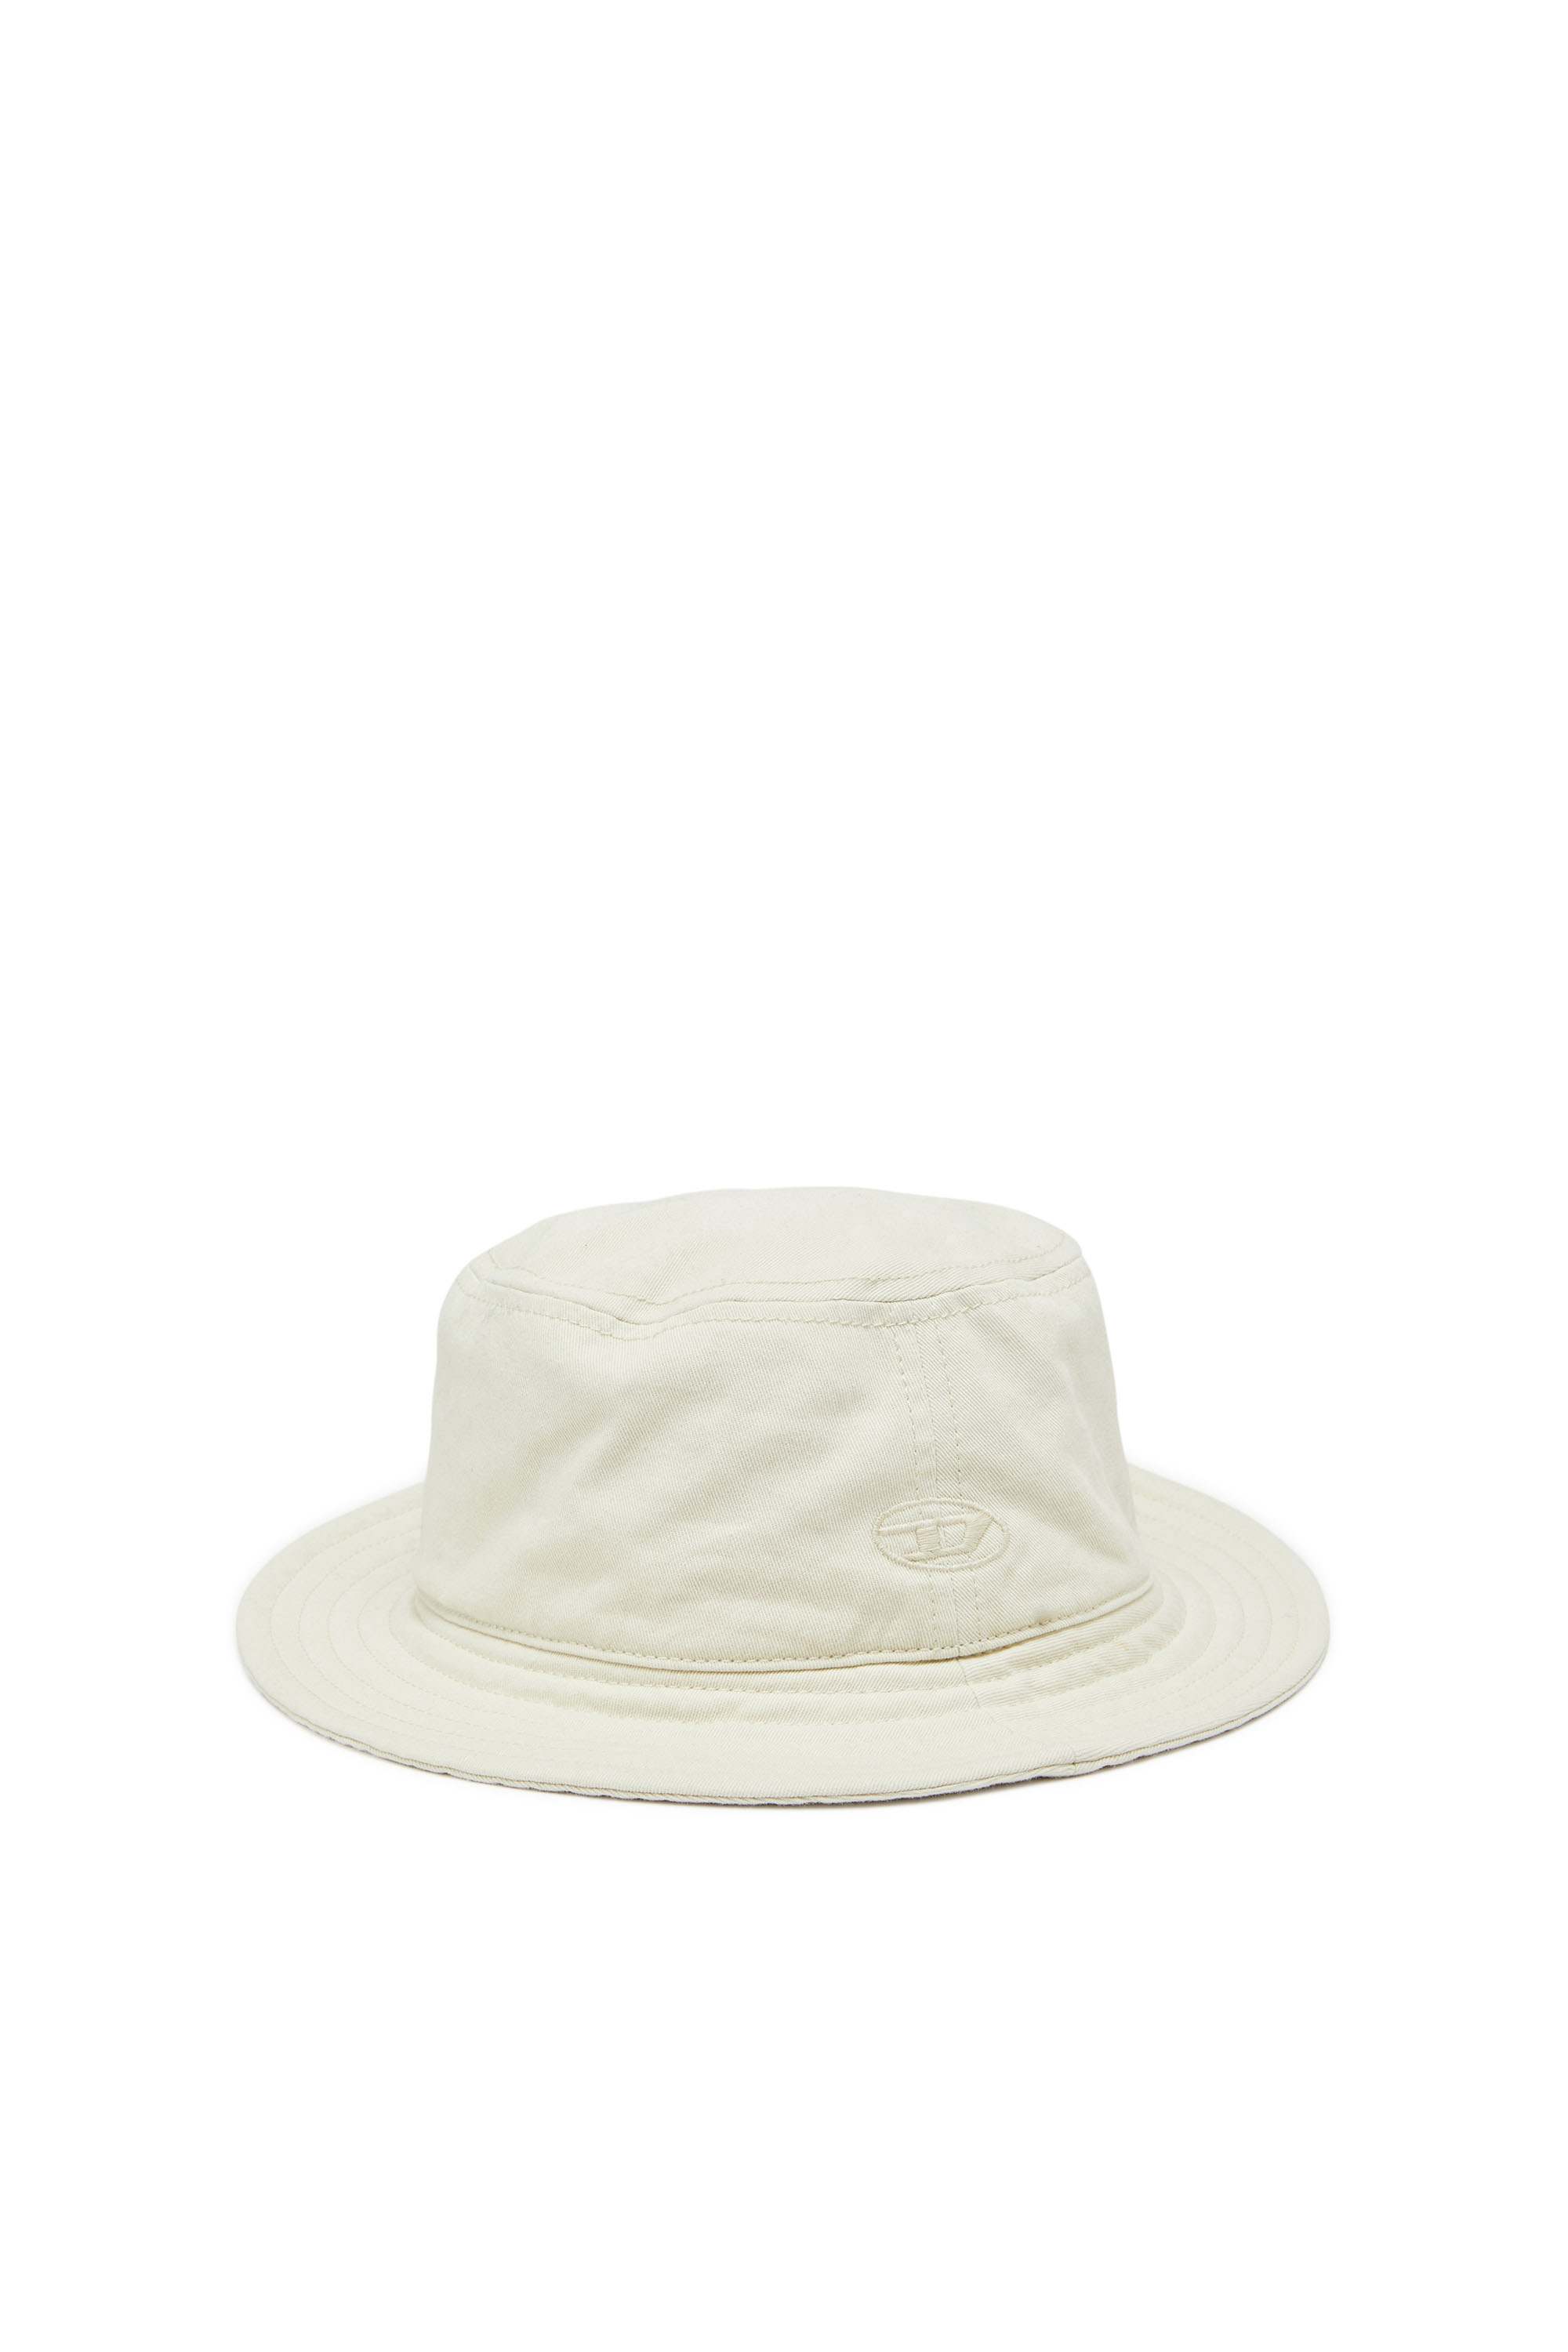 Diesel - Sombrero de pescador con bordado del logotipo a tono - Gorras - Hombre - Blanco